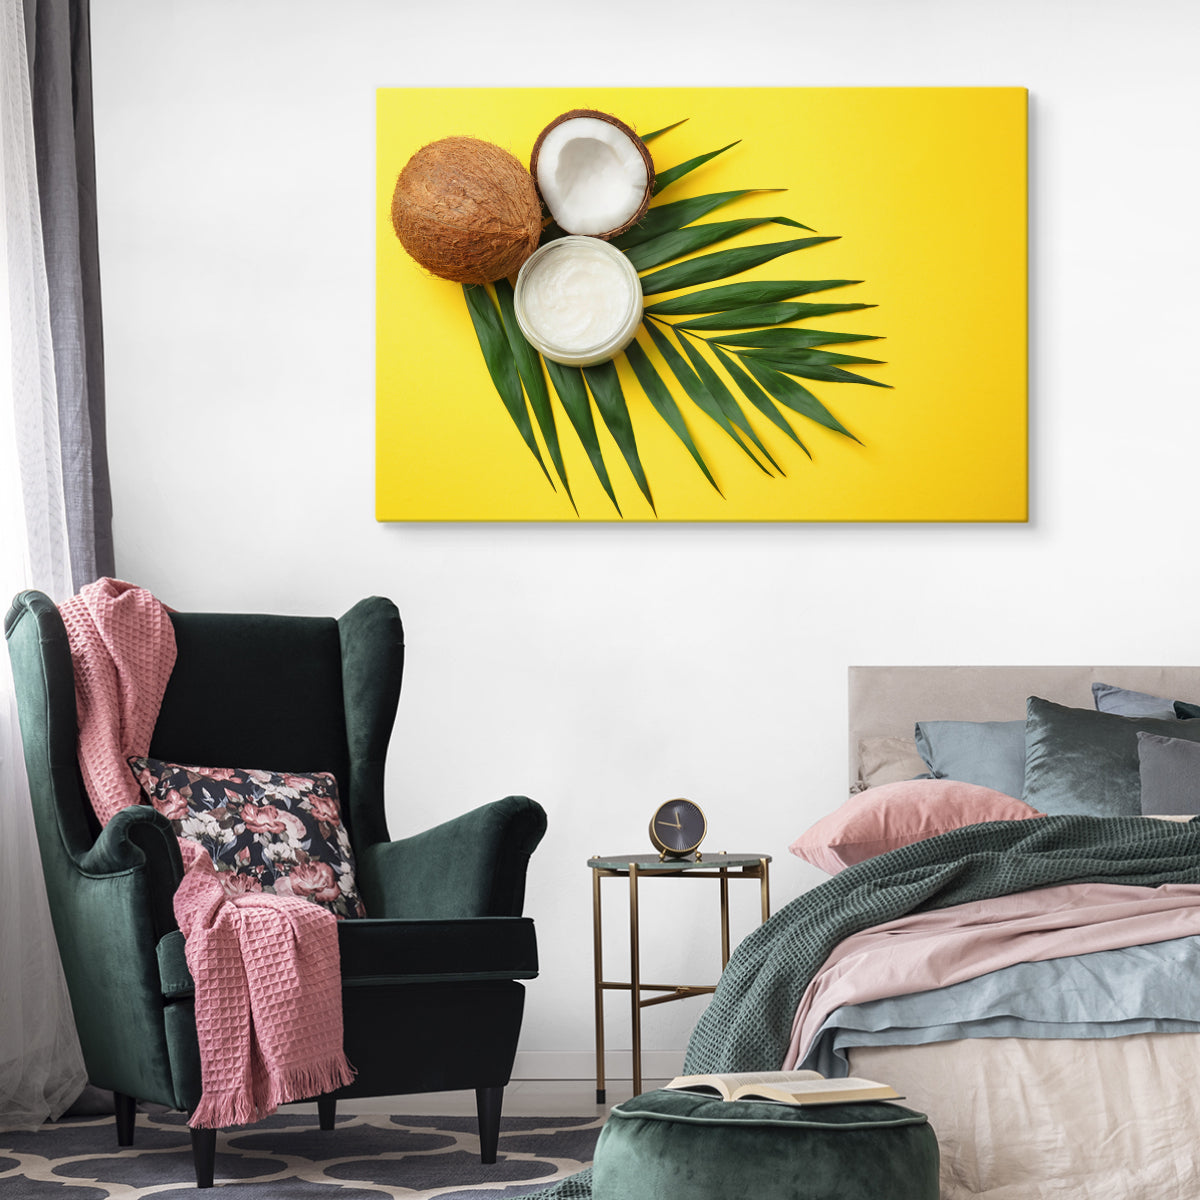 Blad- og kokosnøttfrukt på gul bakgrunn